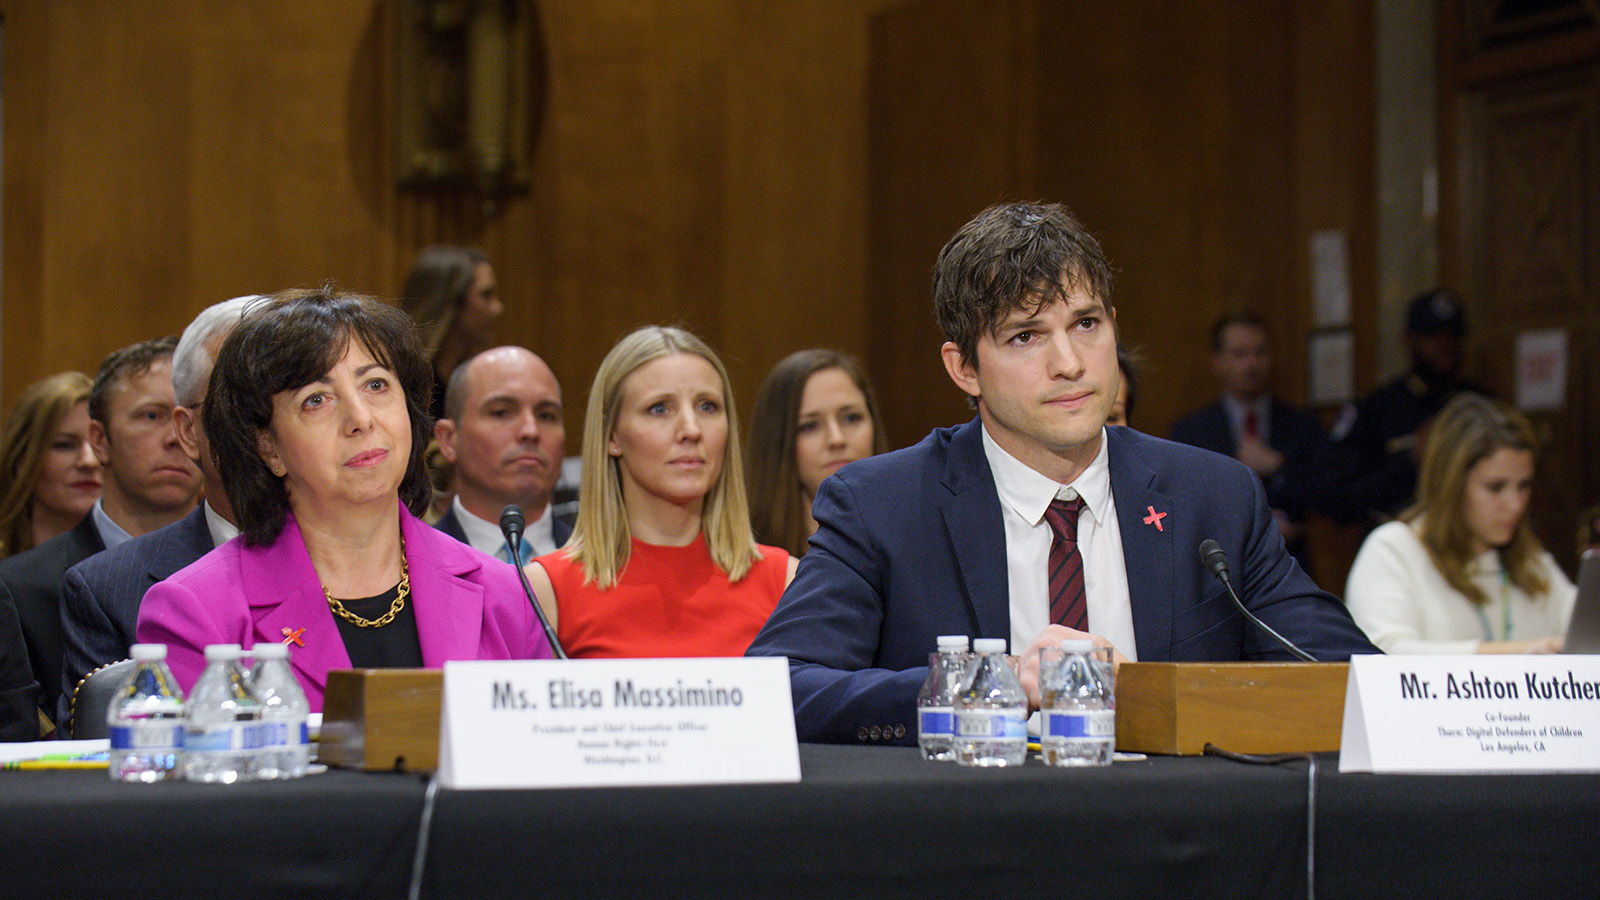 Elisa Massimino and Ashton Kutcher at a Congressional Hearing.